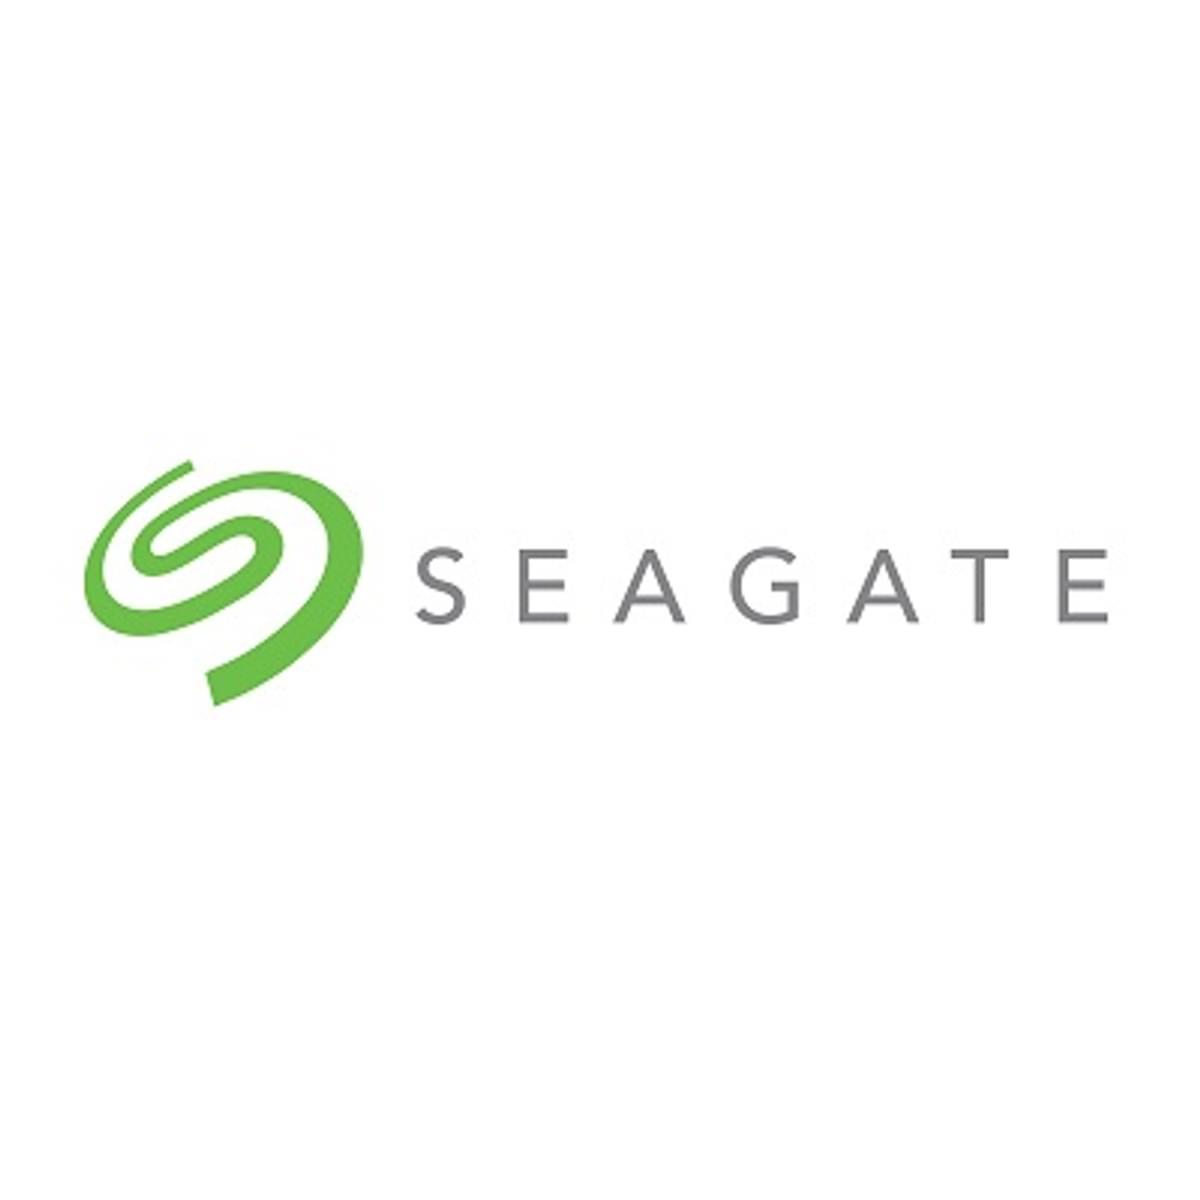 Seagate ziet omzet en winst zakkken image